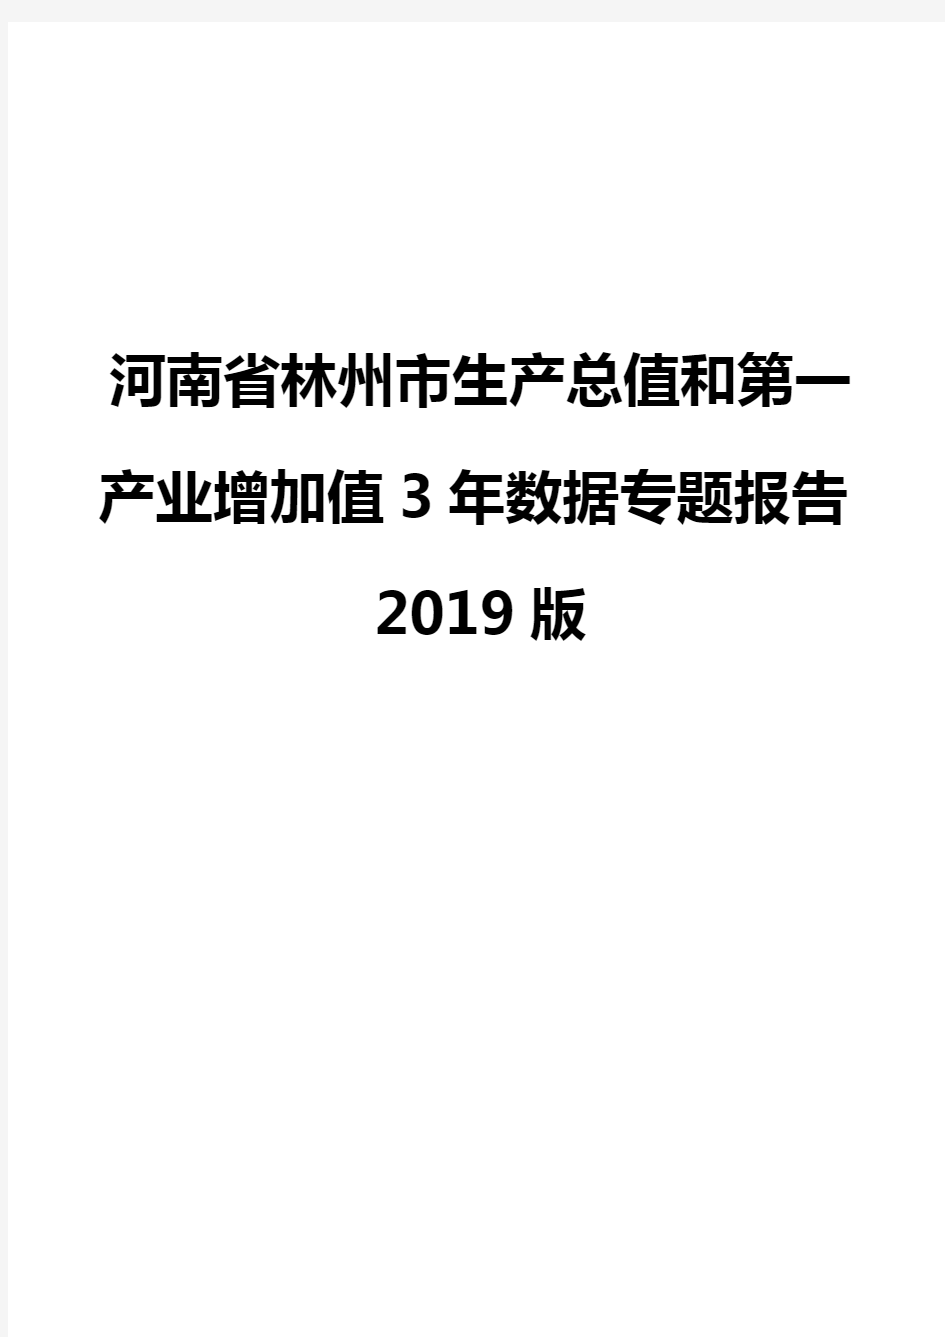 河南省林州市生产总值和第一产业增加值3年数据专题报告2019版